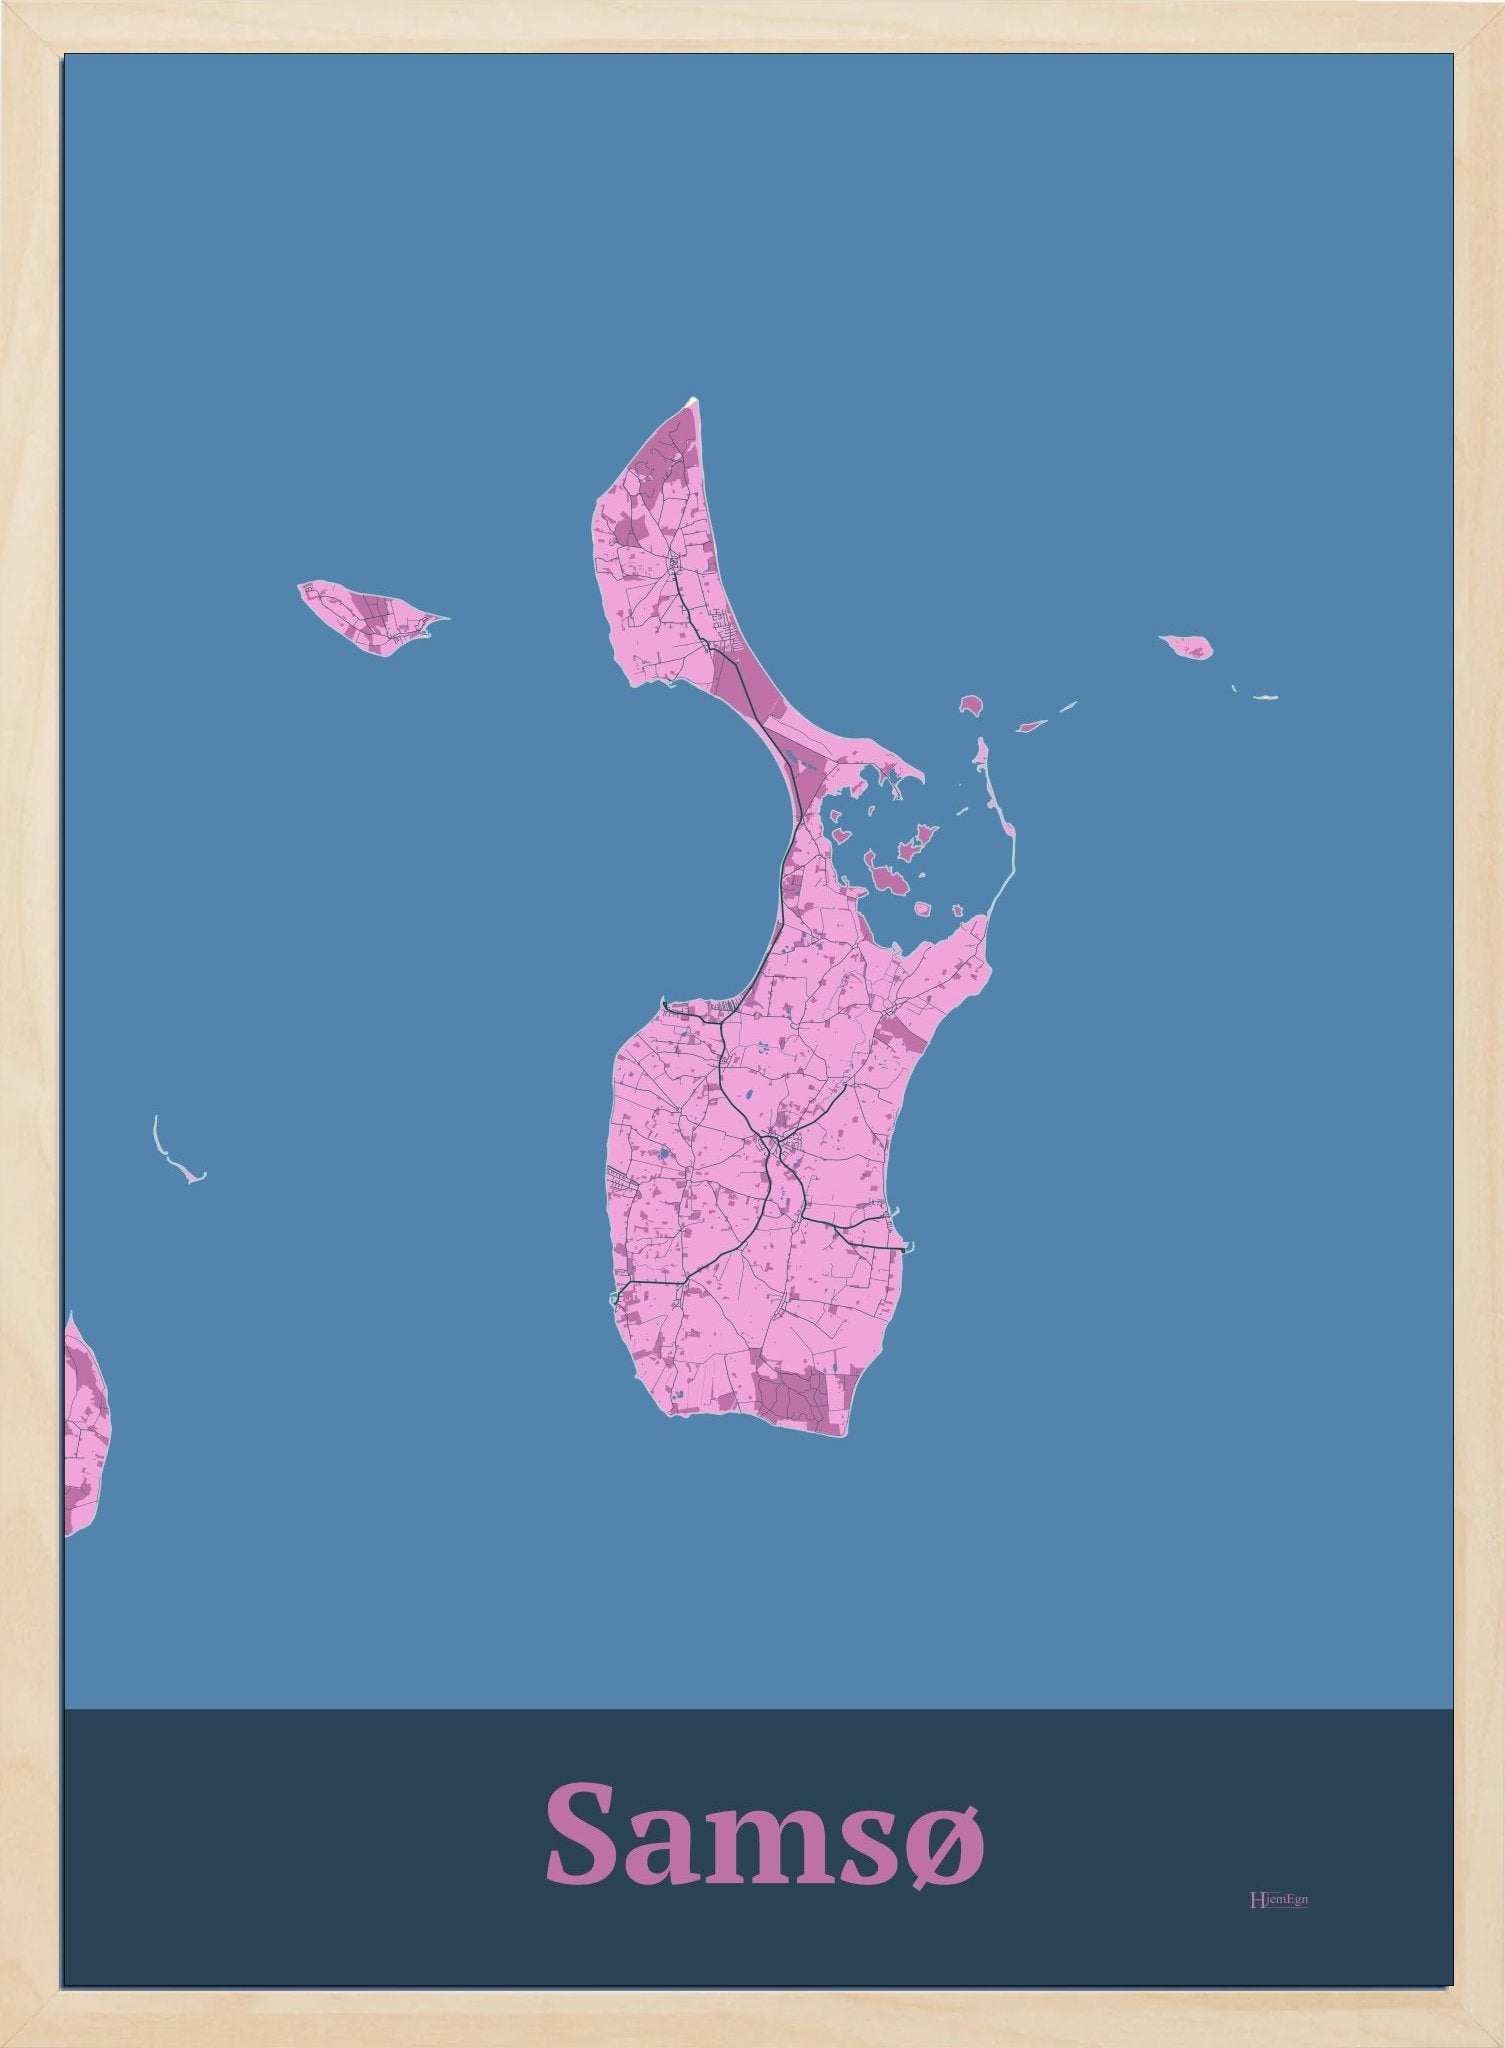 Ø plakat for Samsø design firkantet - Hjemegn